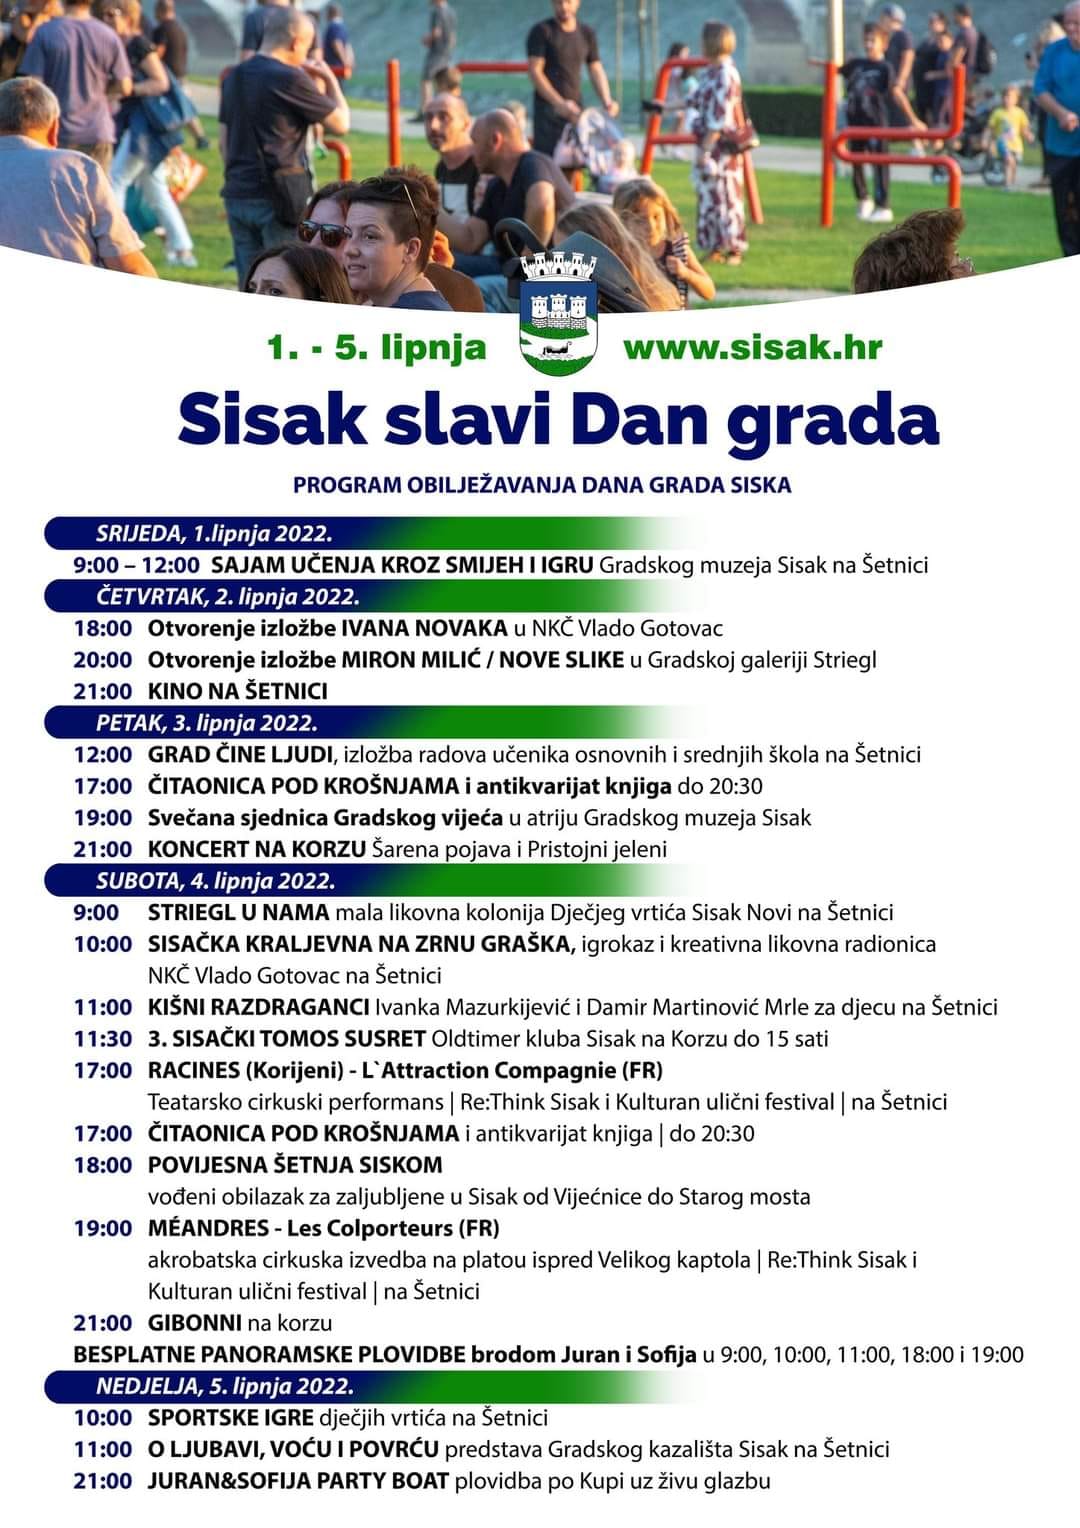 You are currently viewing Sisak slavi Dan grada